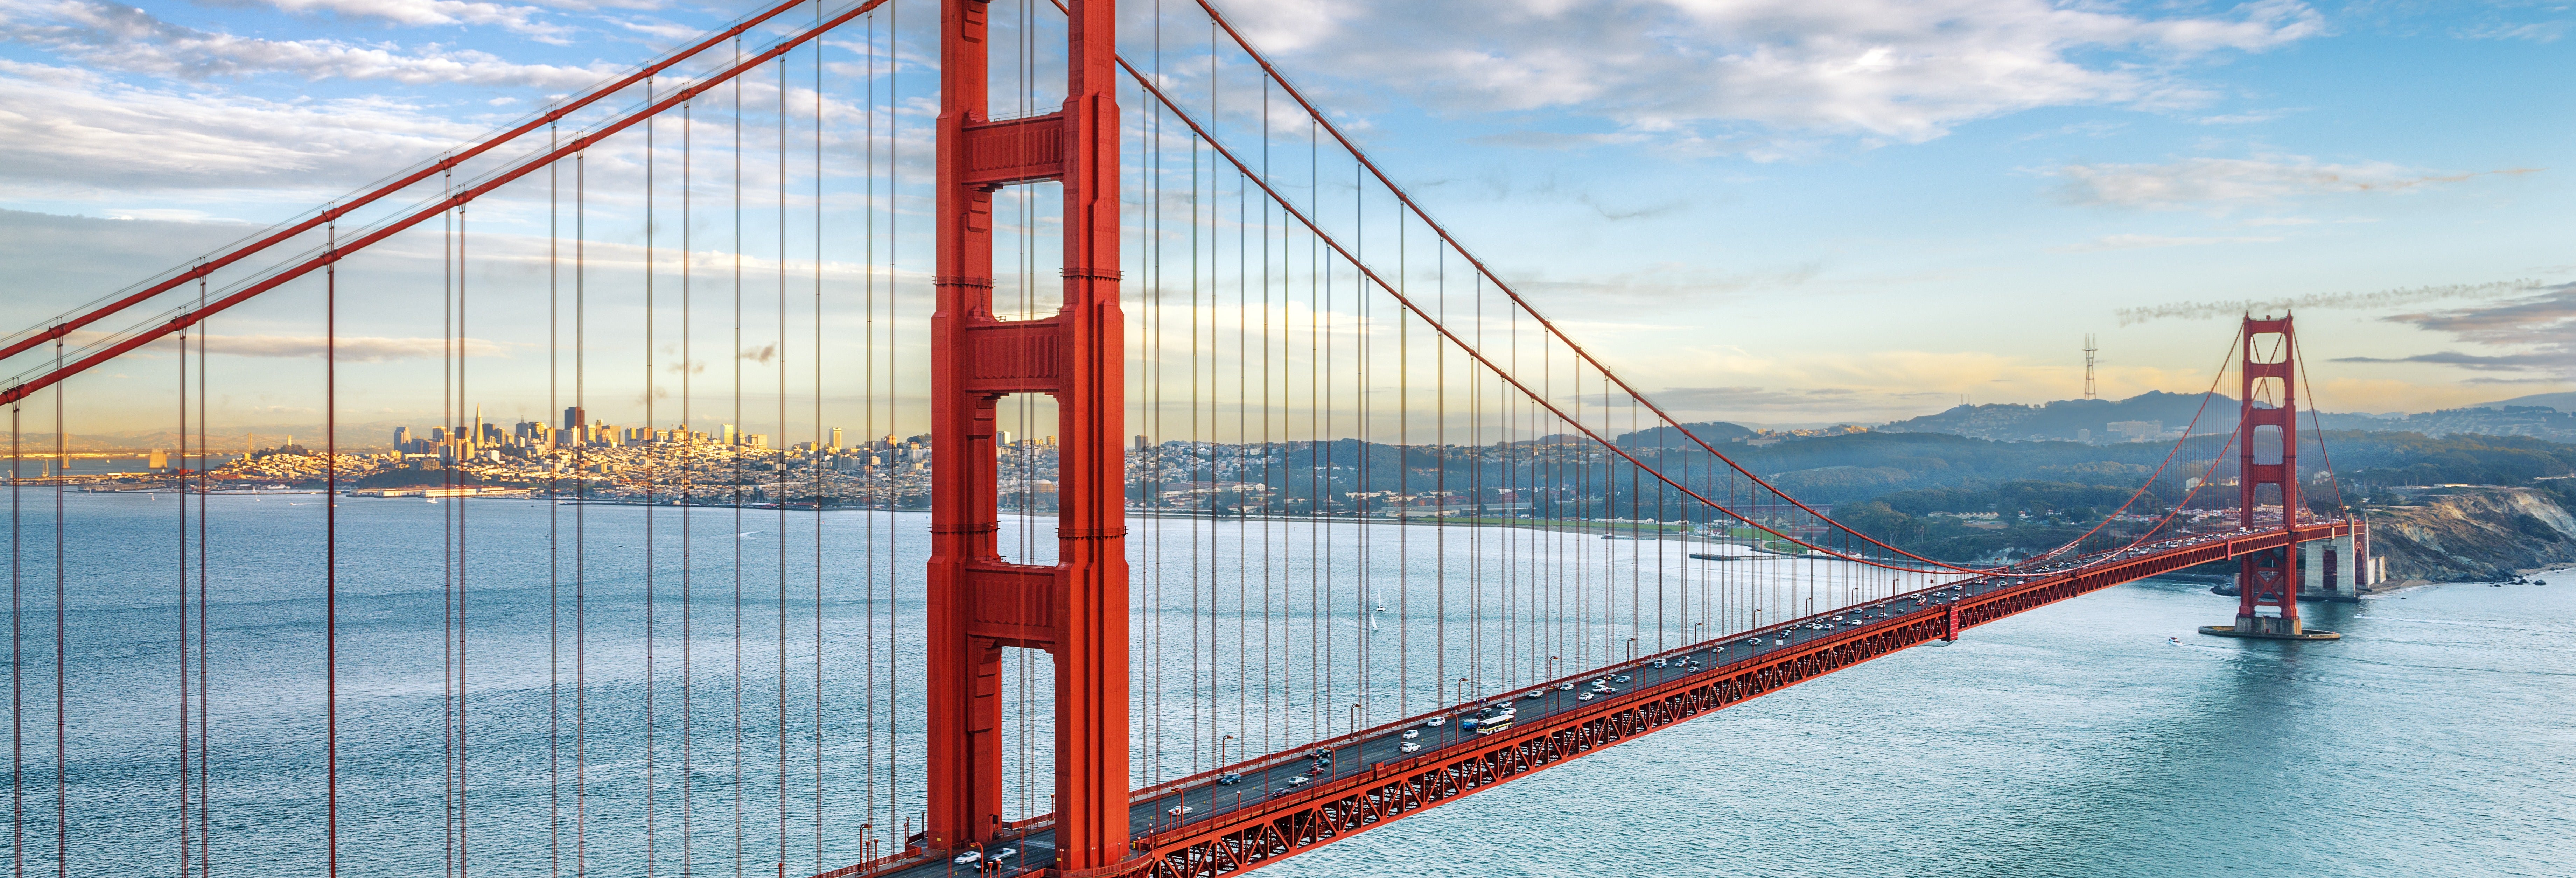 San Francisco Golden Gate Bay Cruise